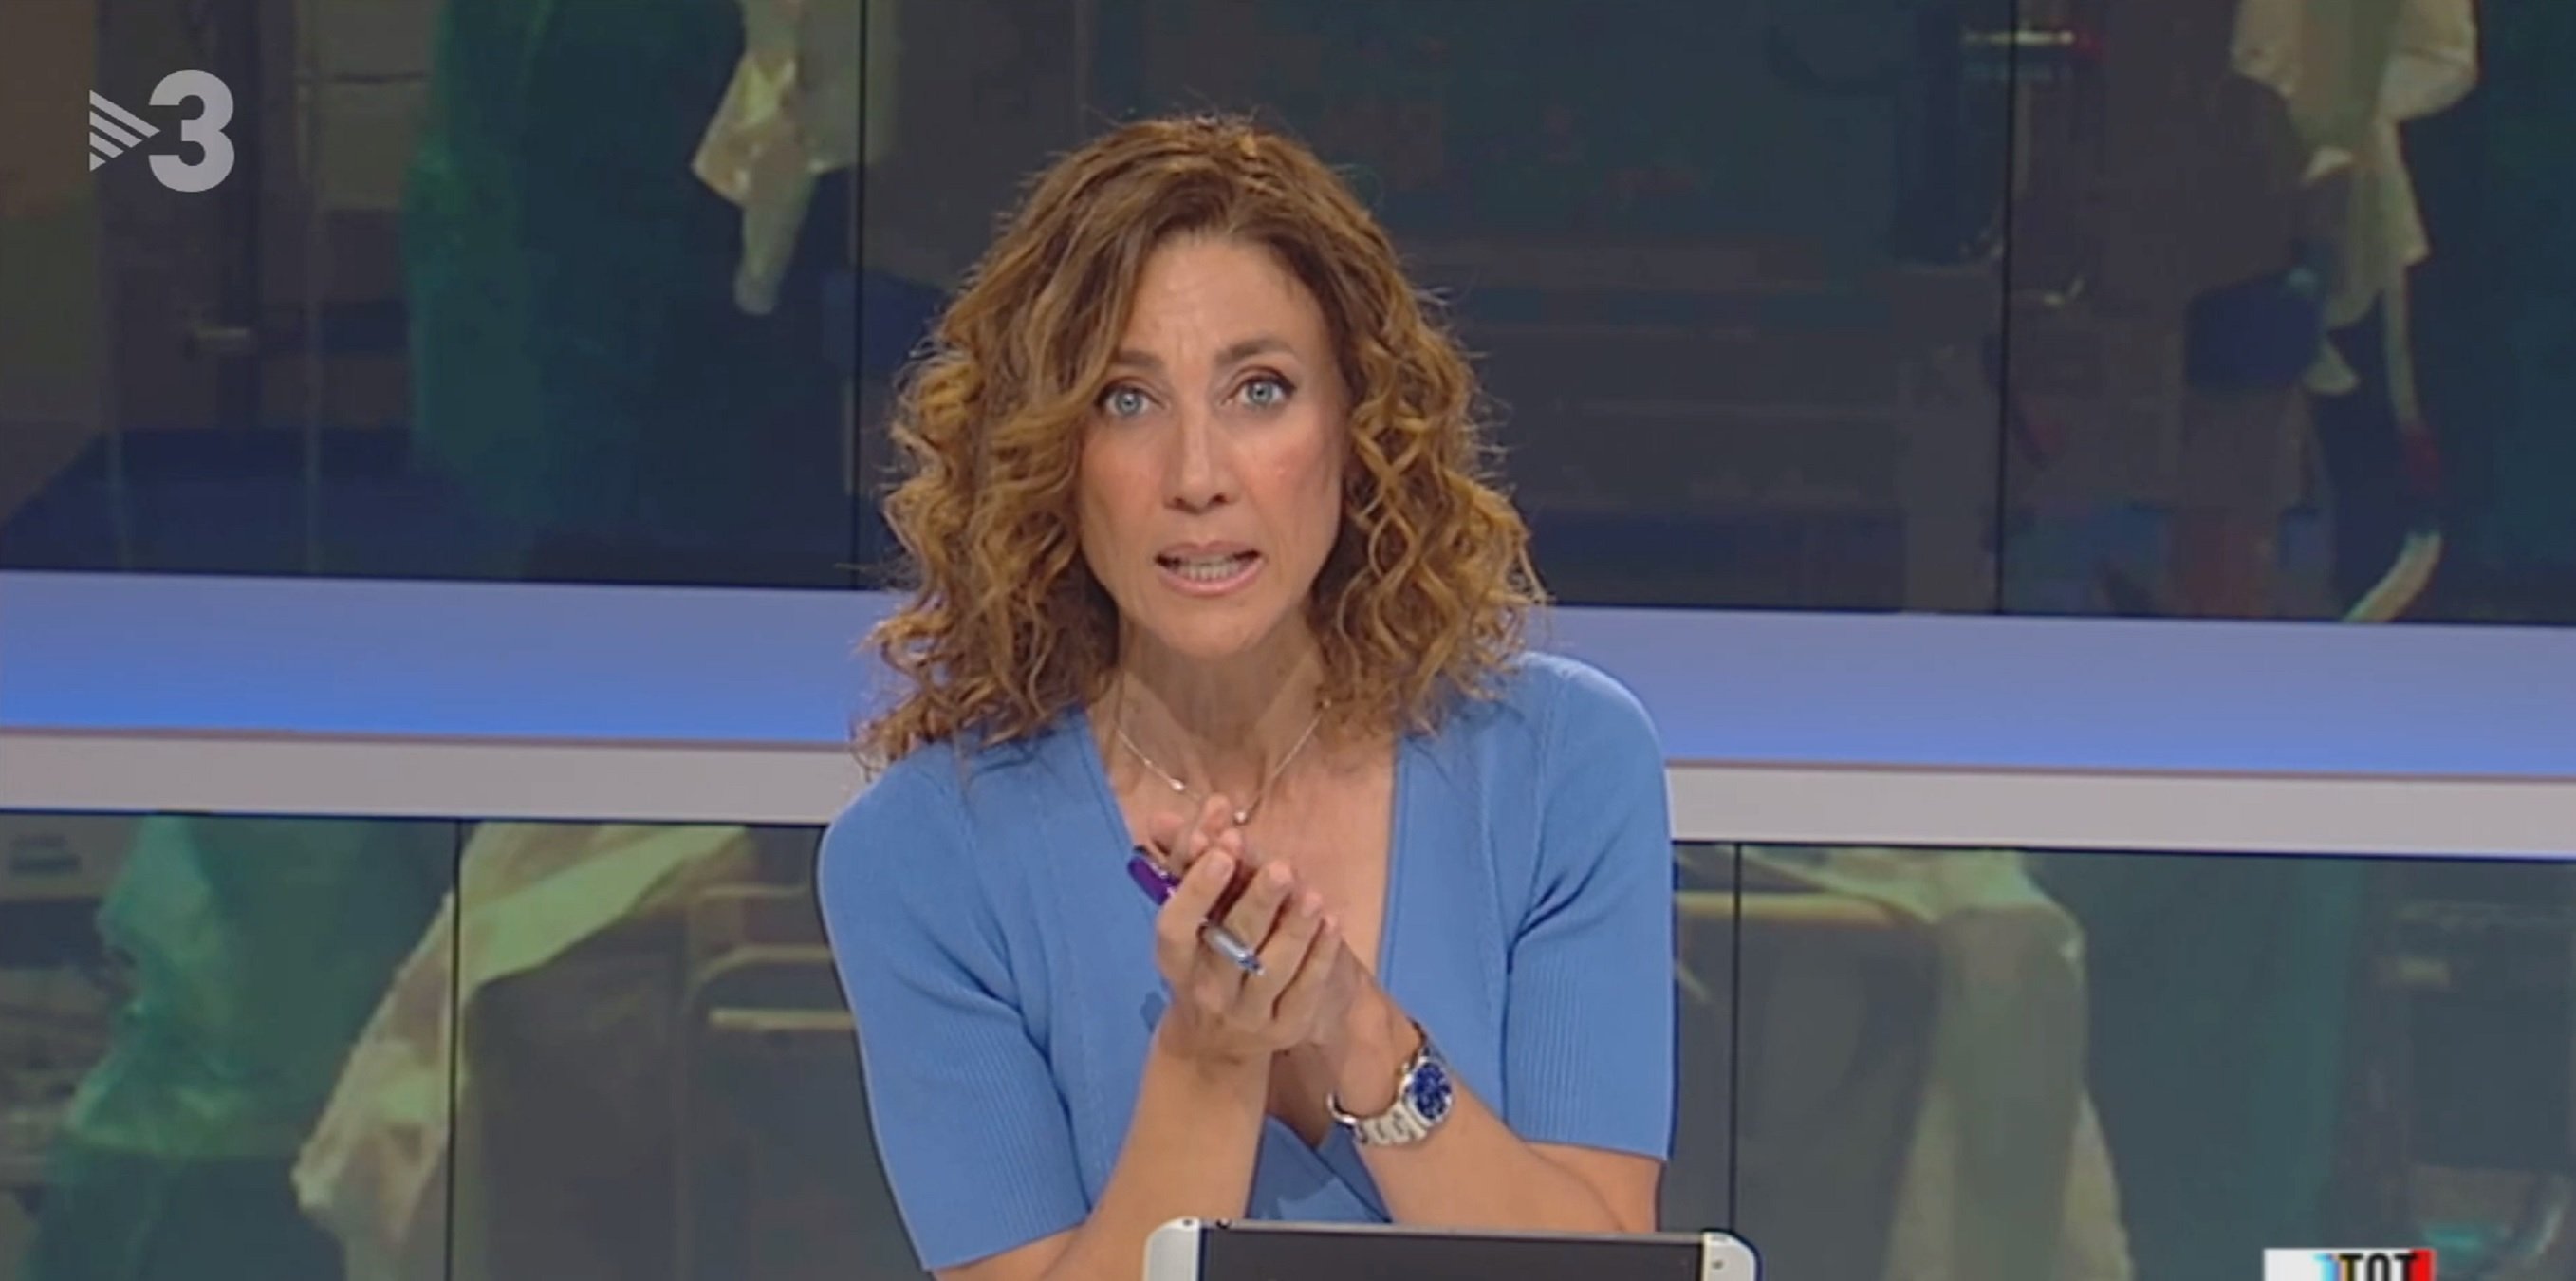 Tertuliano de TV3 explota: los 'indepes' de la Generalitat son unos "payasos"